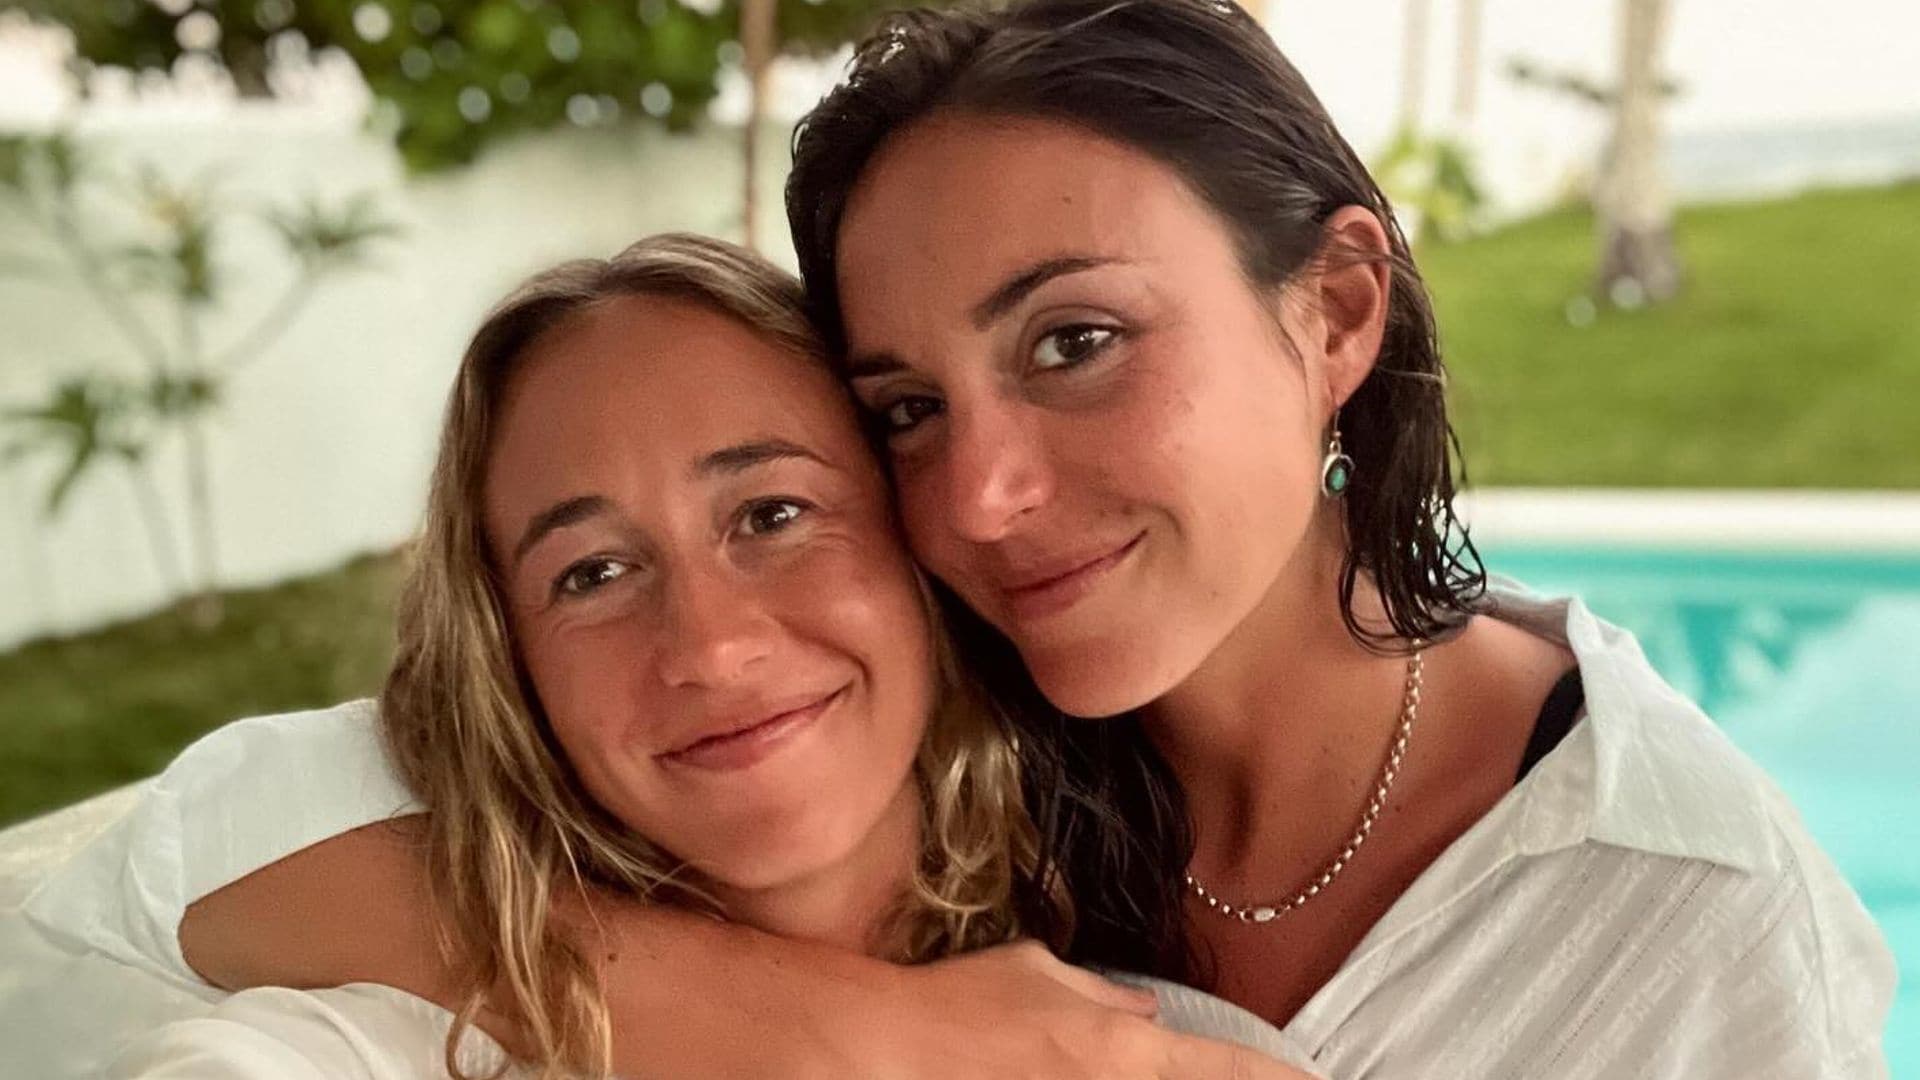 PRIMICIA: Inés Bilbao y Beatriz Moreno cancelan su boda a dos meses de su gran día